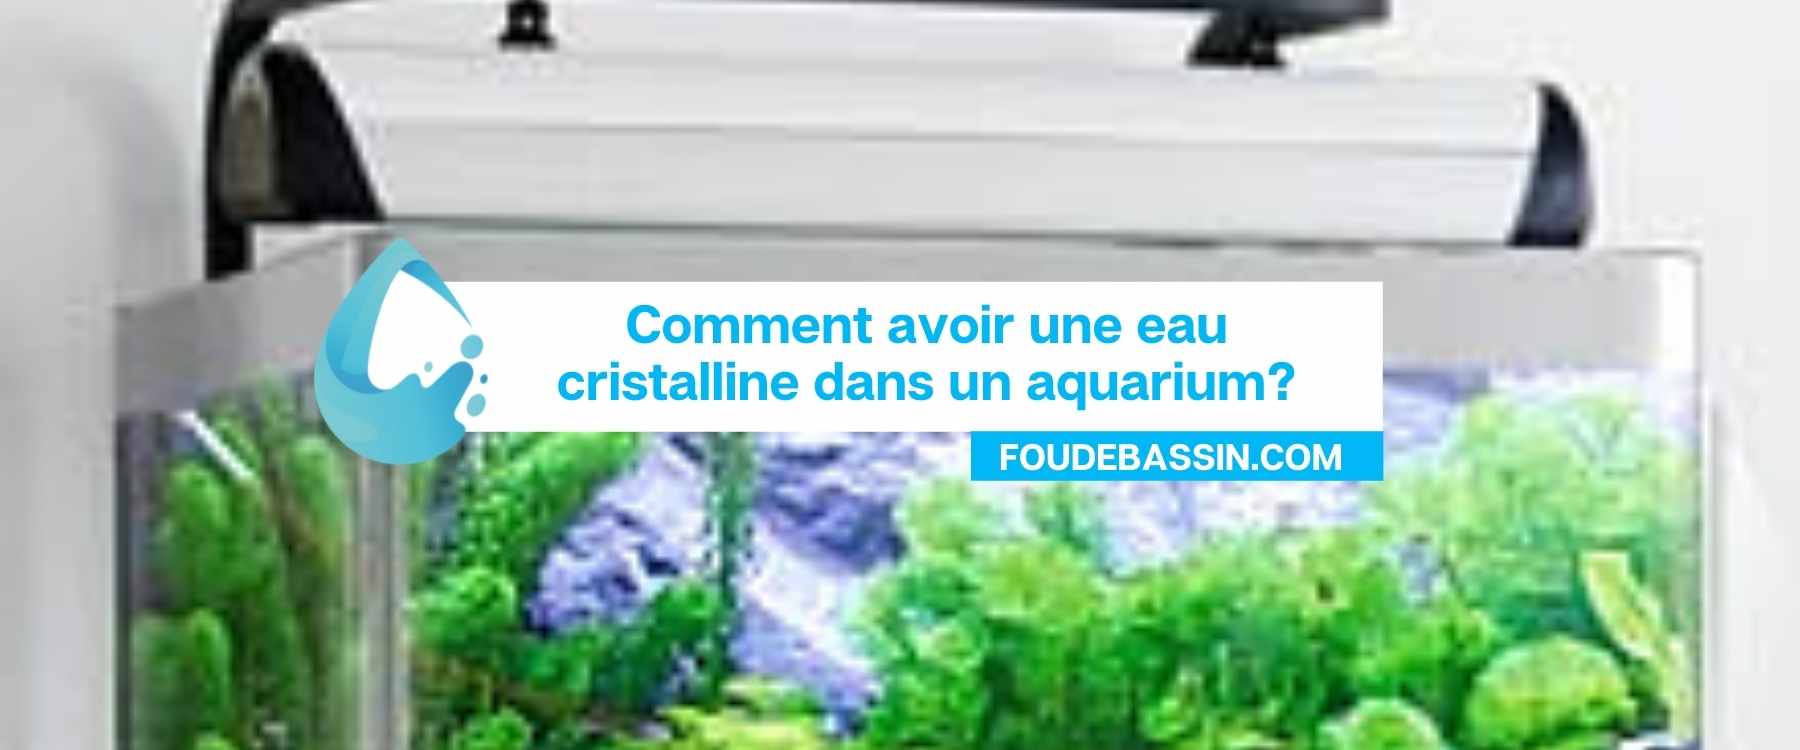 Comment avoir une eau cristalline dans un aquarium?